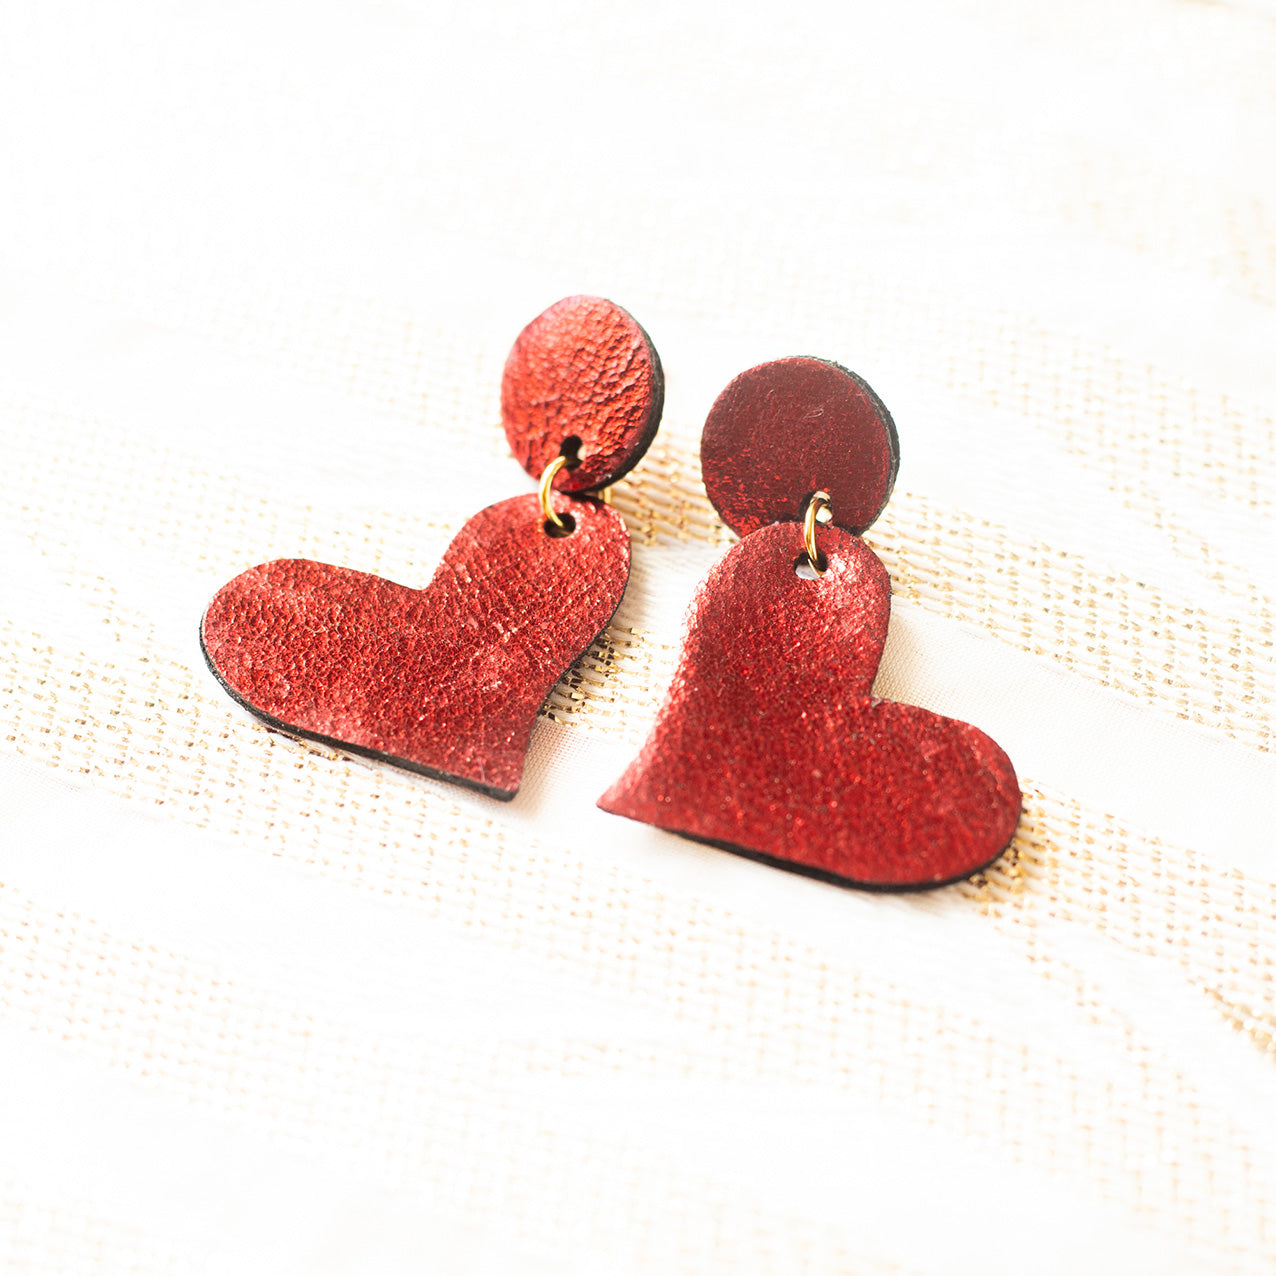 My Red Heart Earrings